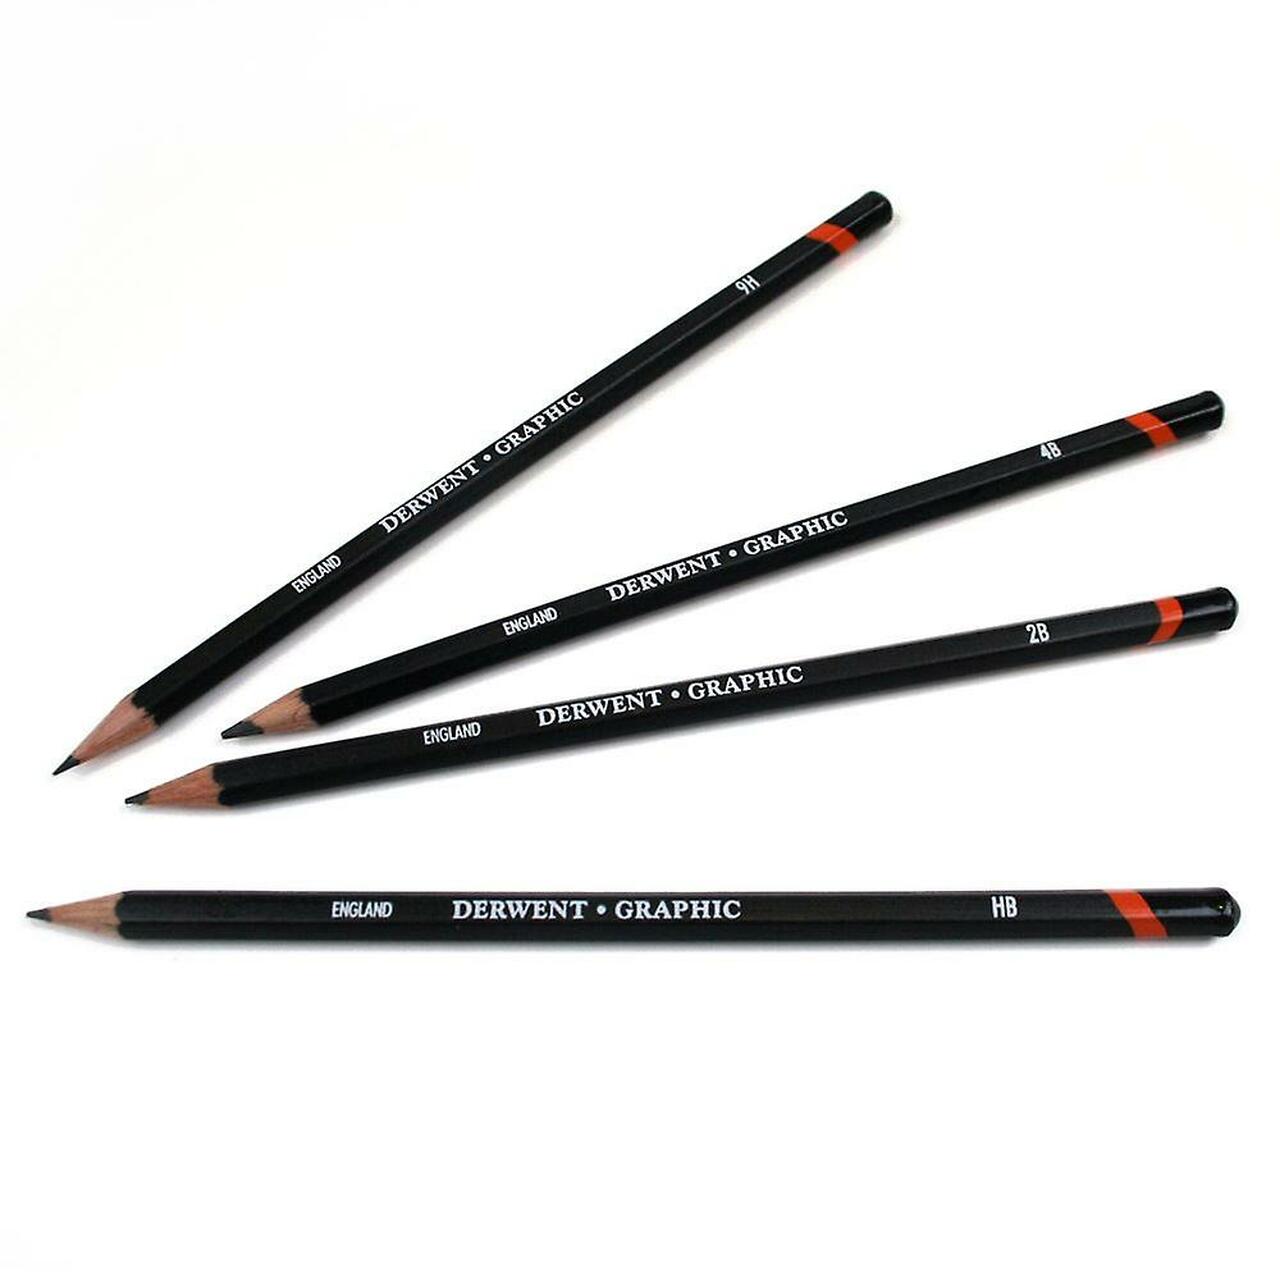 Derwent - Graphic Pencil - 7H